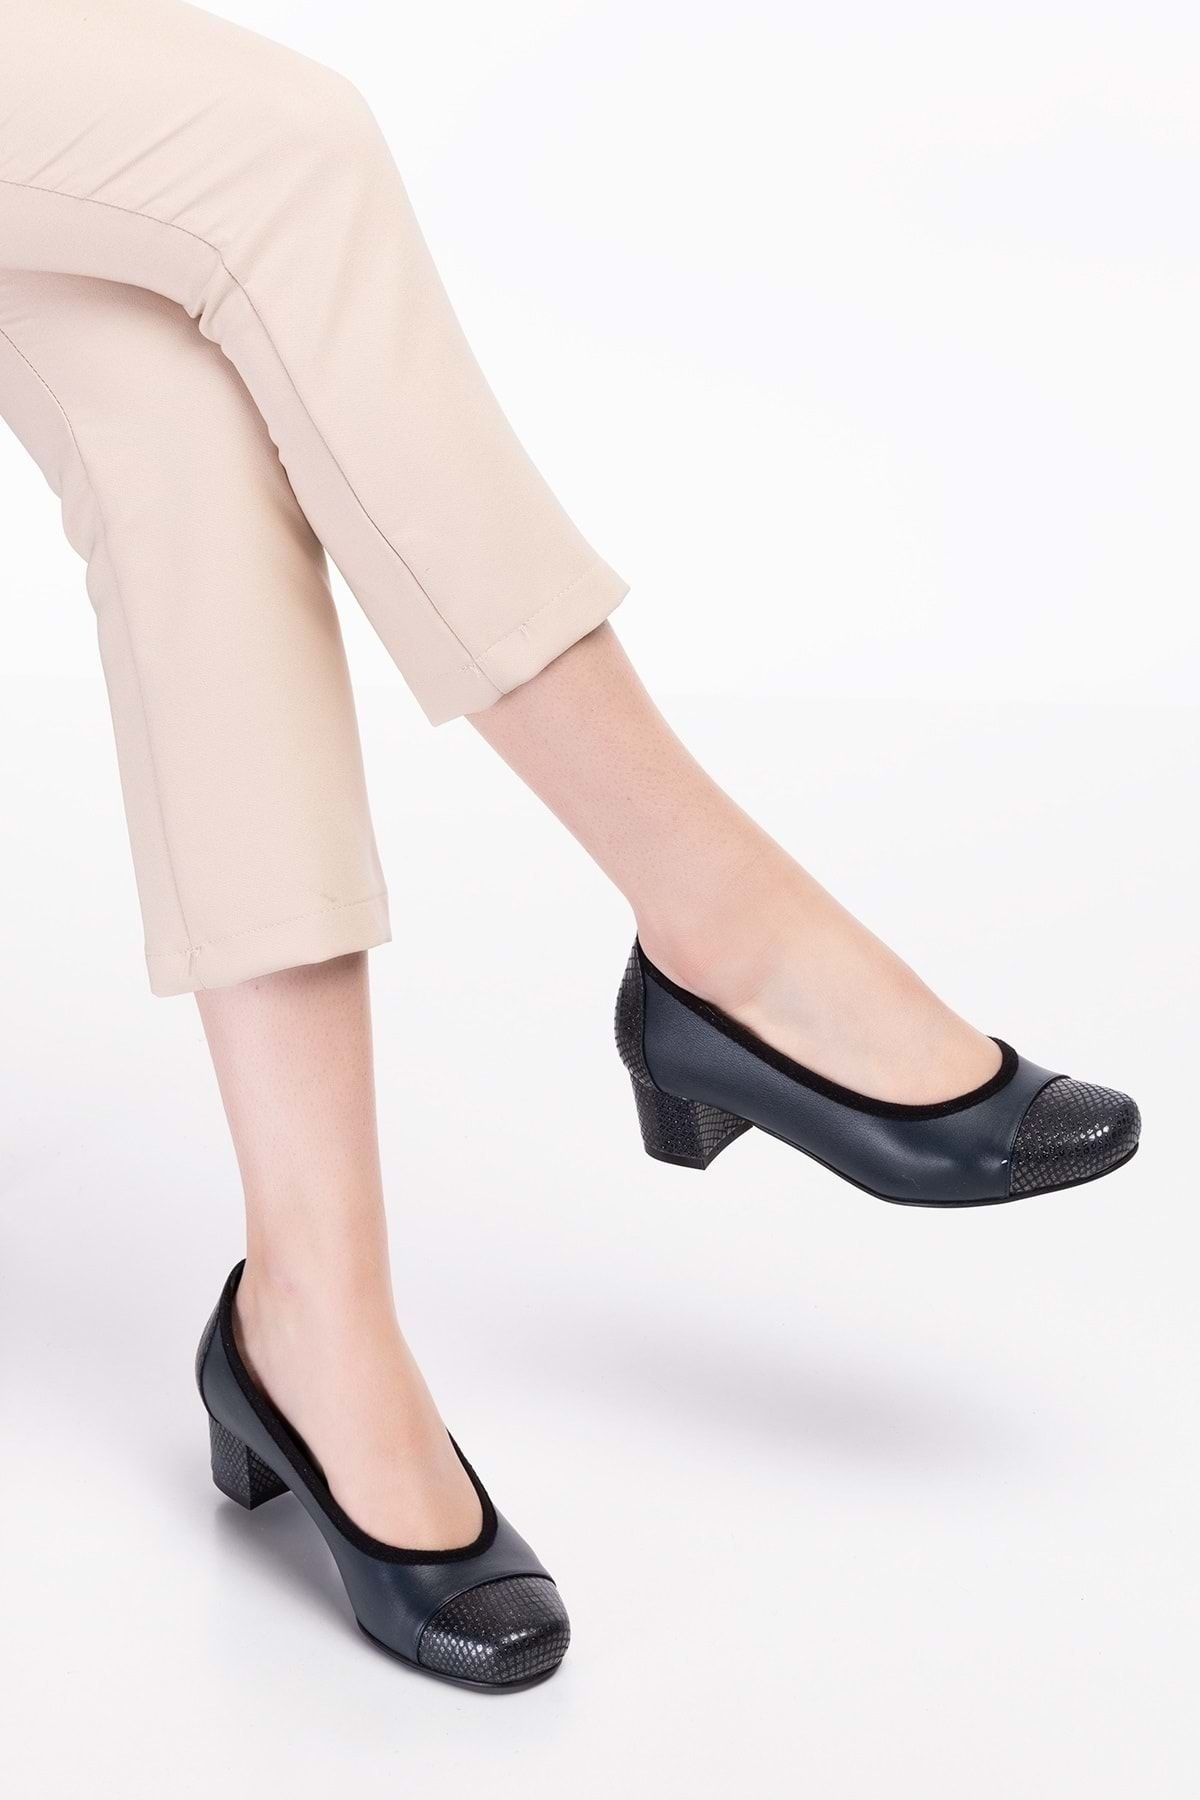 Gondol Kadın Hakiki Deri Rahat Günlük Topuklu Ayakkabı Şhn.875 - Lacivert - 35